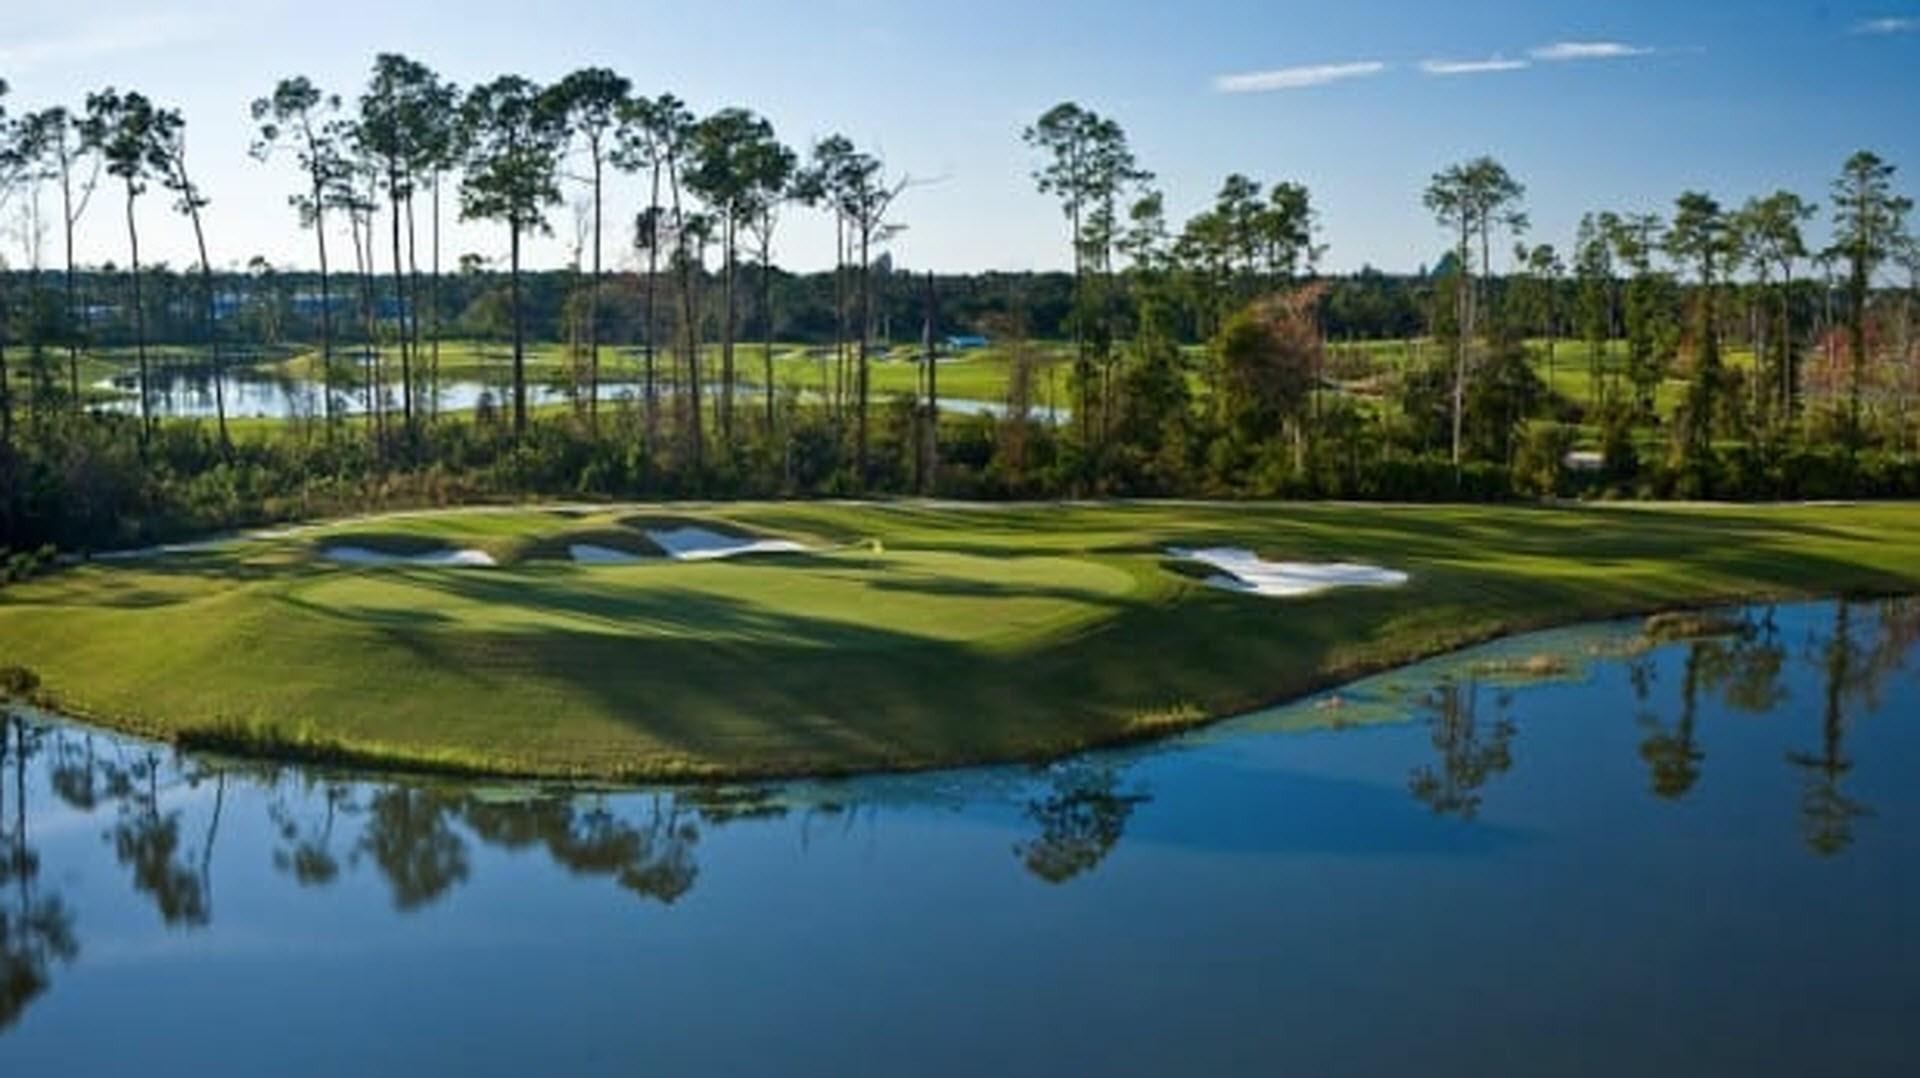 Waldorf Astoria Golf Club in Orlando, FL